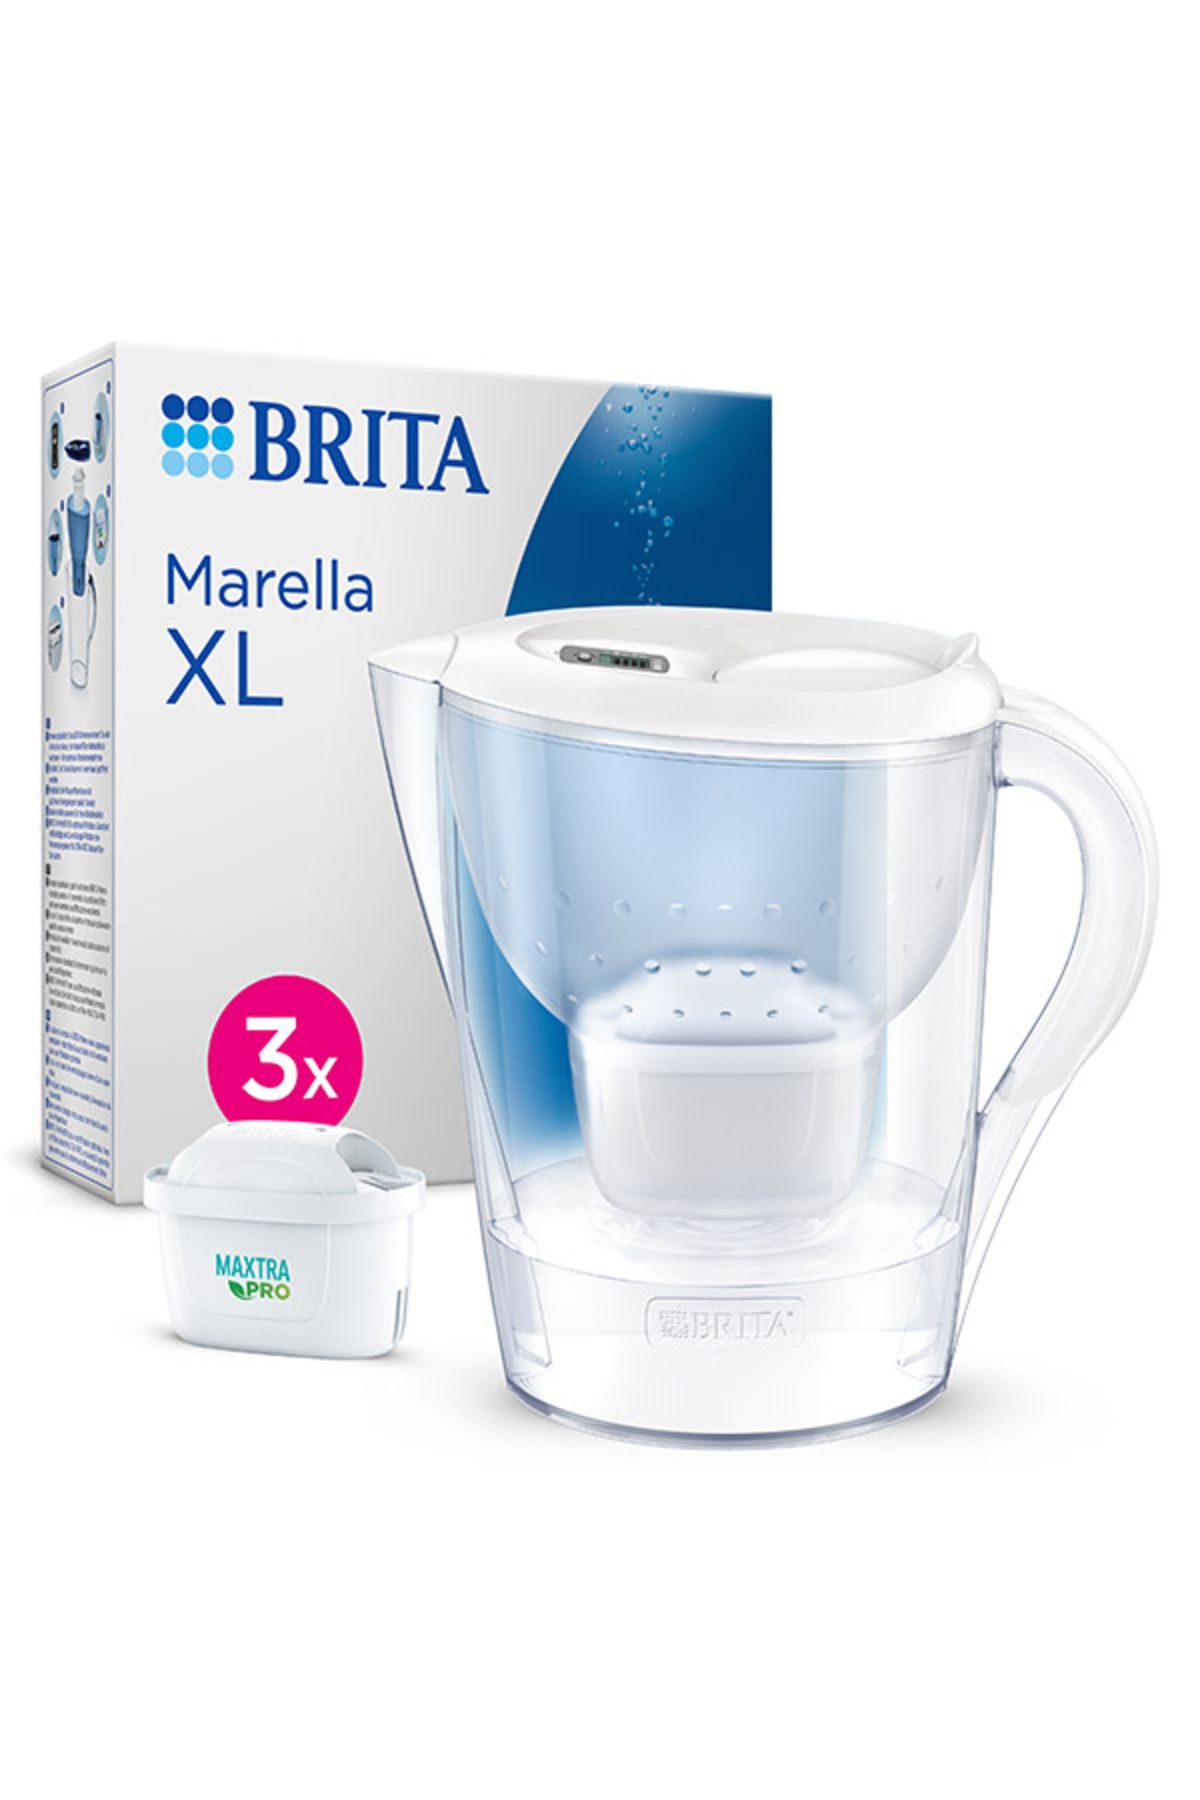 Brita Marella Xl ''3x Maxtra Pro-all-ın-1 Filtreli'' Su Arıtma Sürahisi – Beyaz